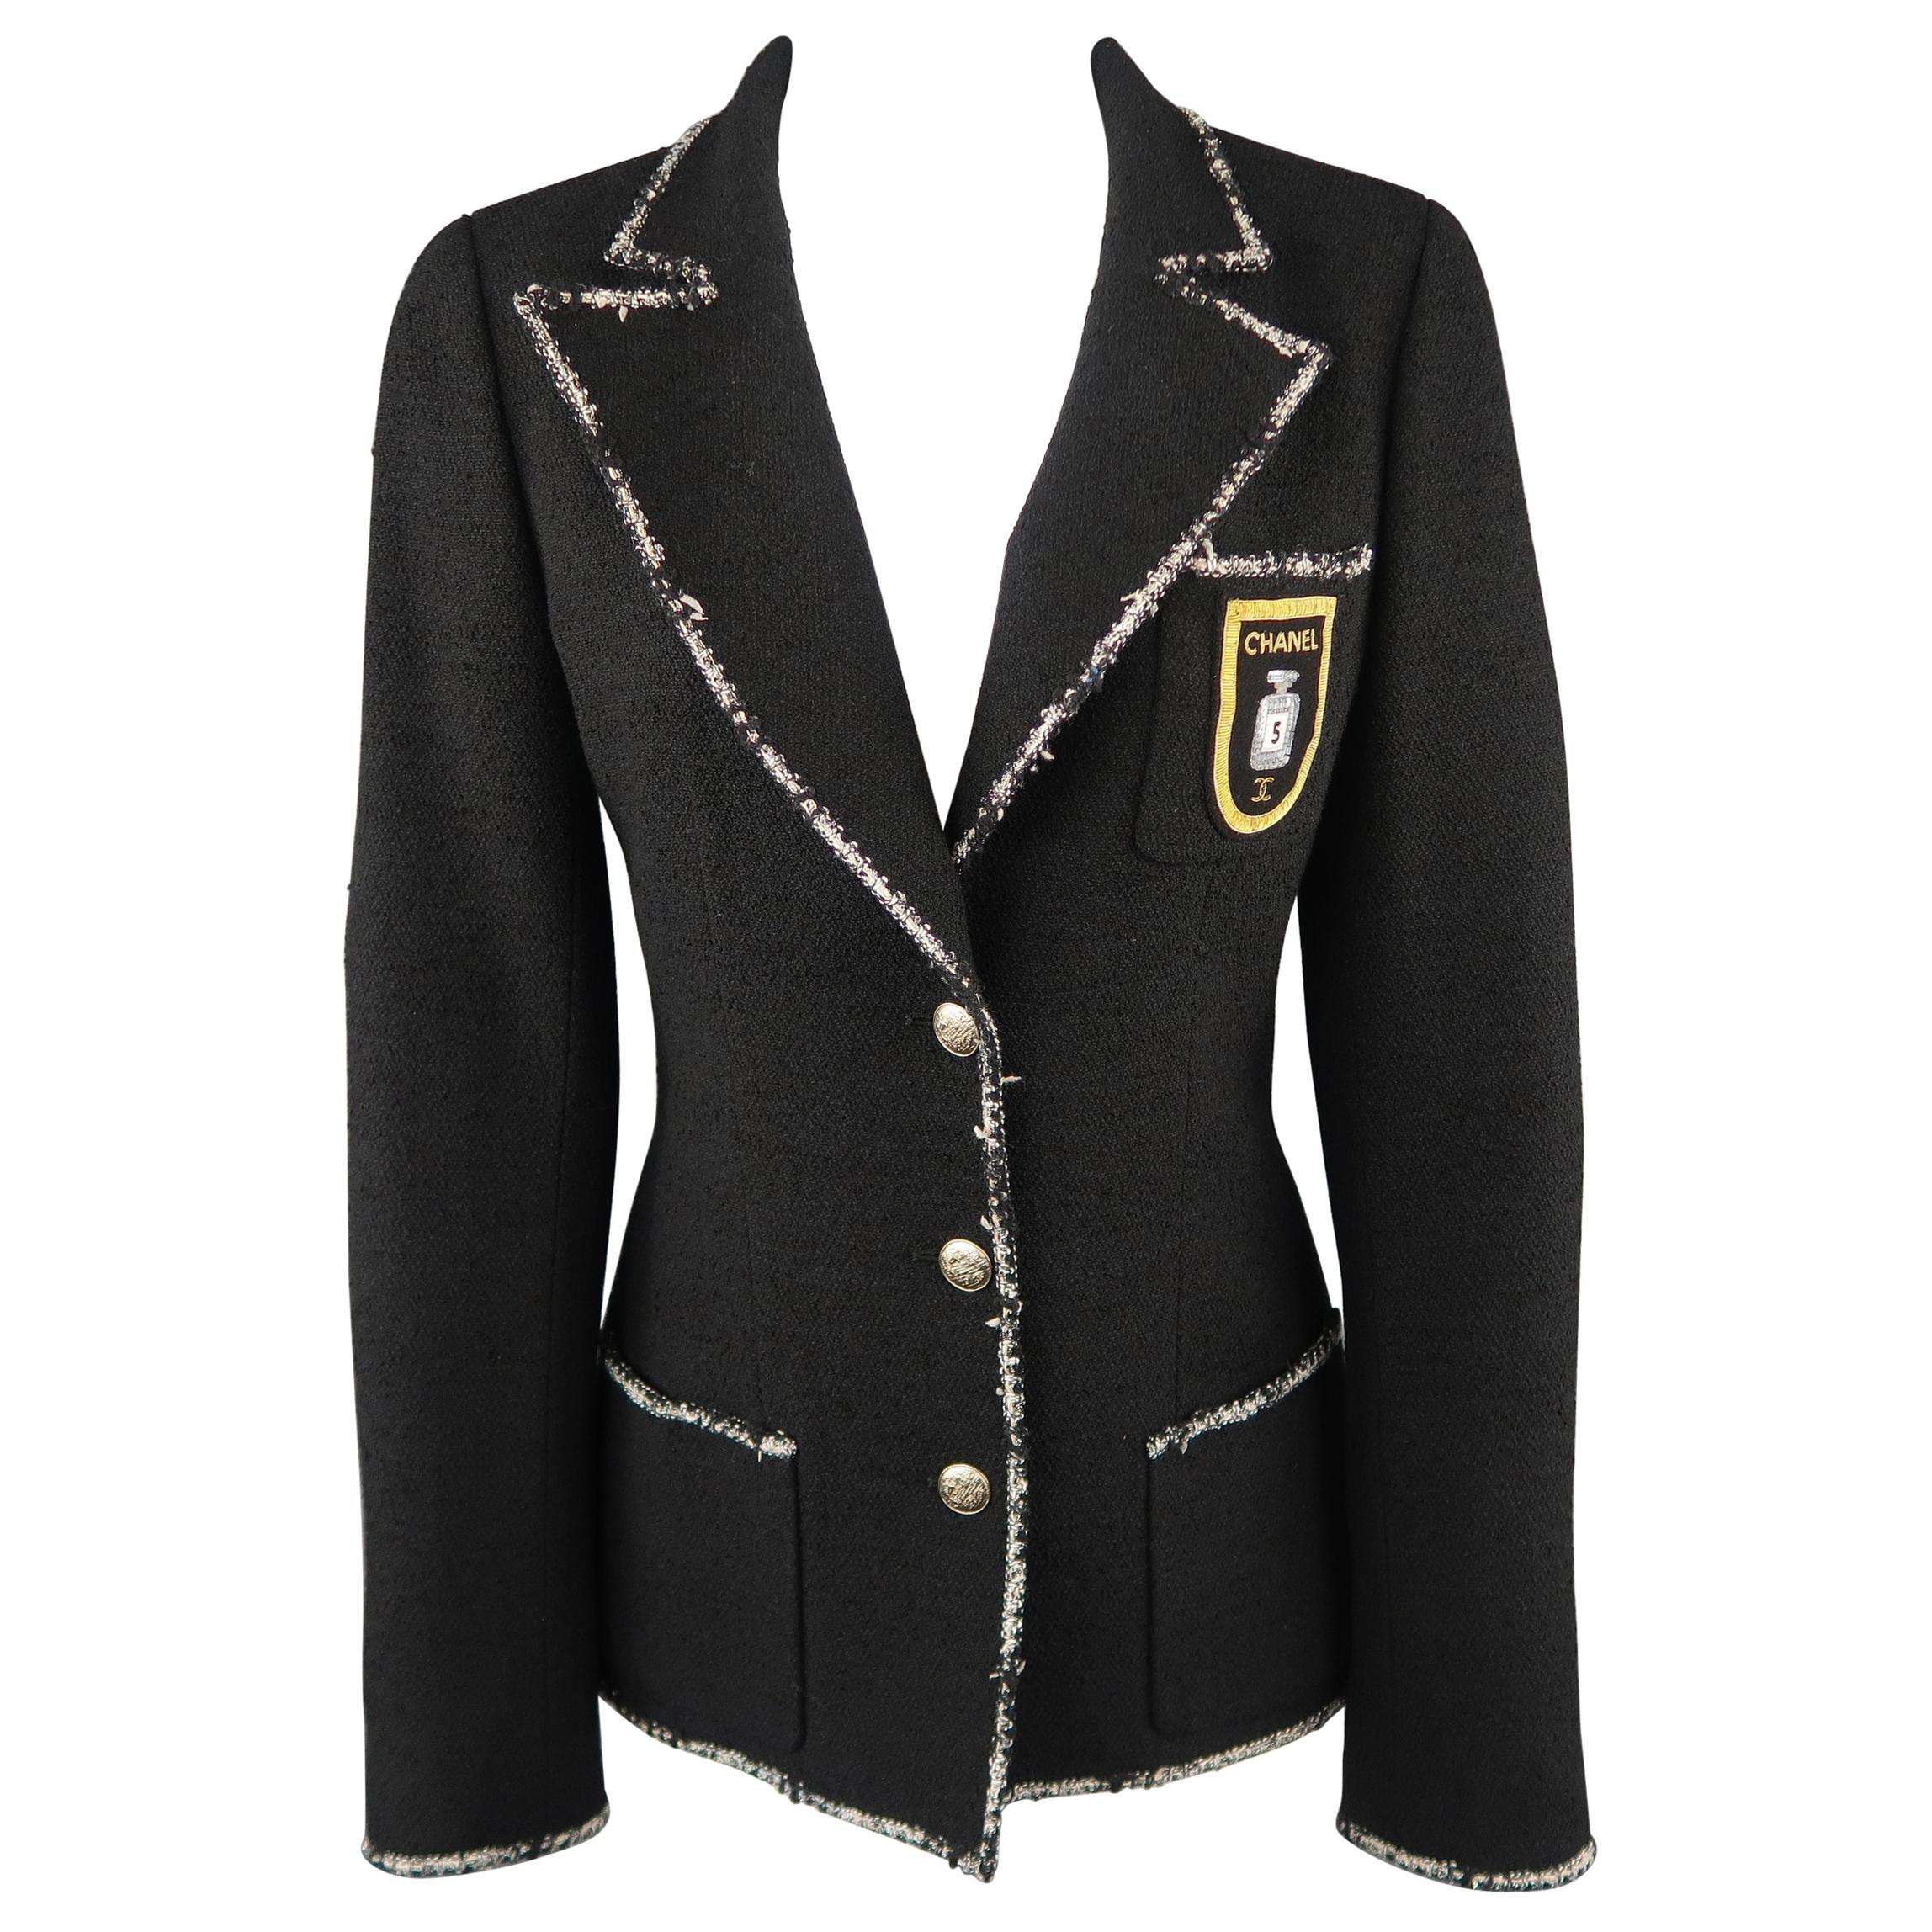 CHANEL Size 6 Black Wool Blend Boucle Trim No. 5 Blazer Jacket